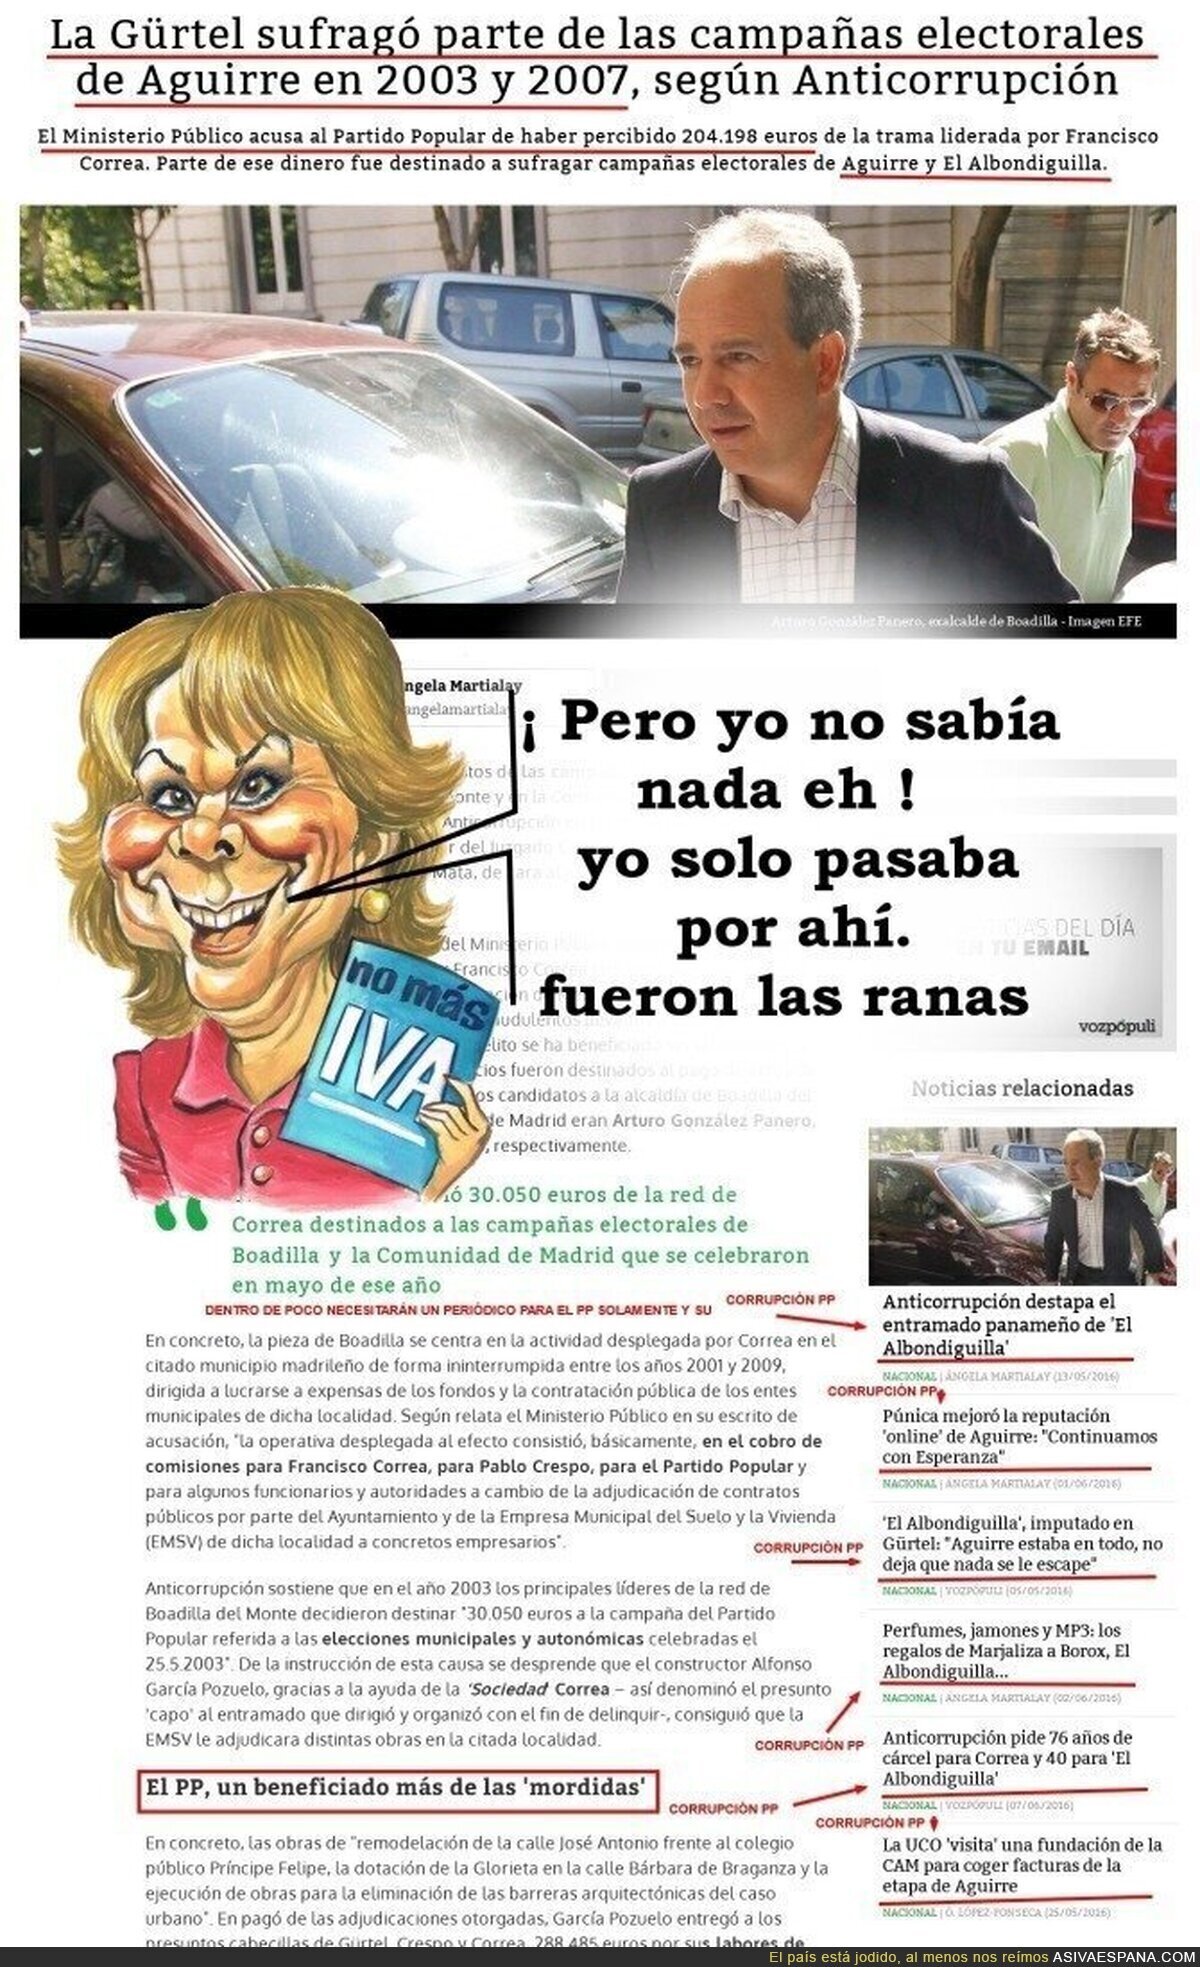 Pero Esperanza Aguirre no sabía nada, claro